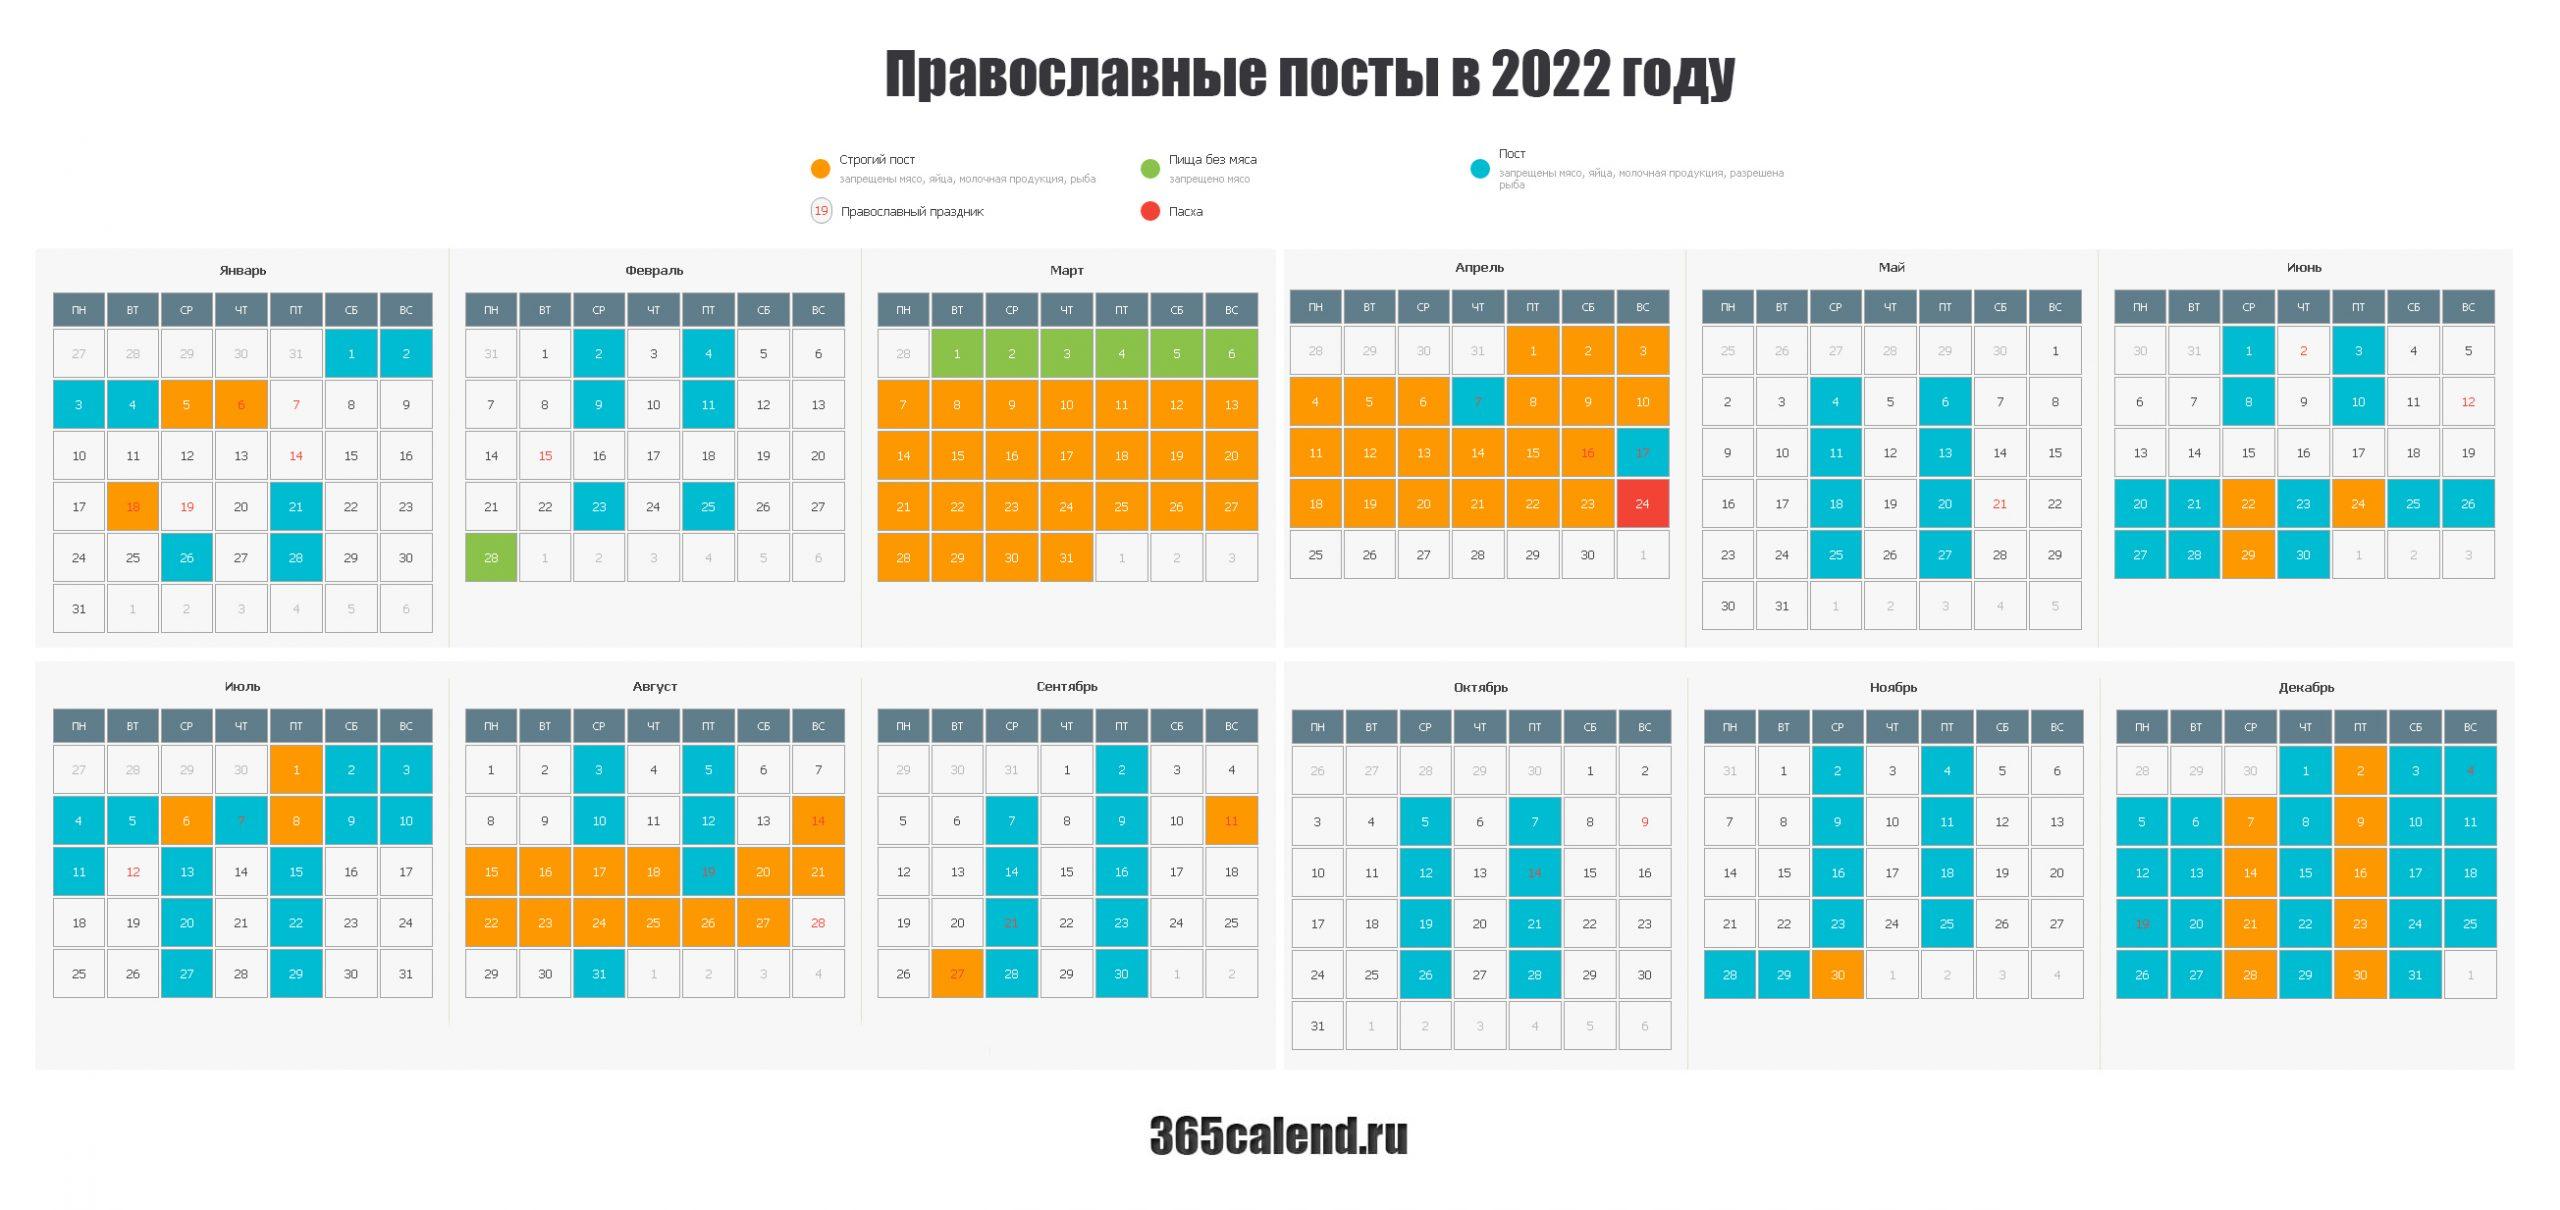 Начало и конец великого поста в 2024. Посты в 2022 году православные. Посты в 2022 году православные календарь. Пост православный 2022. Христианские посты в 2022 году.